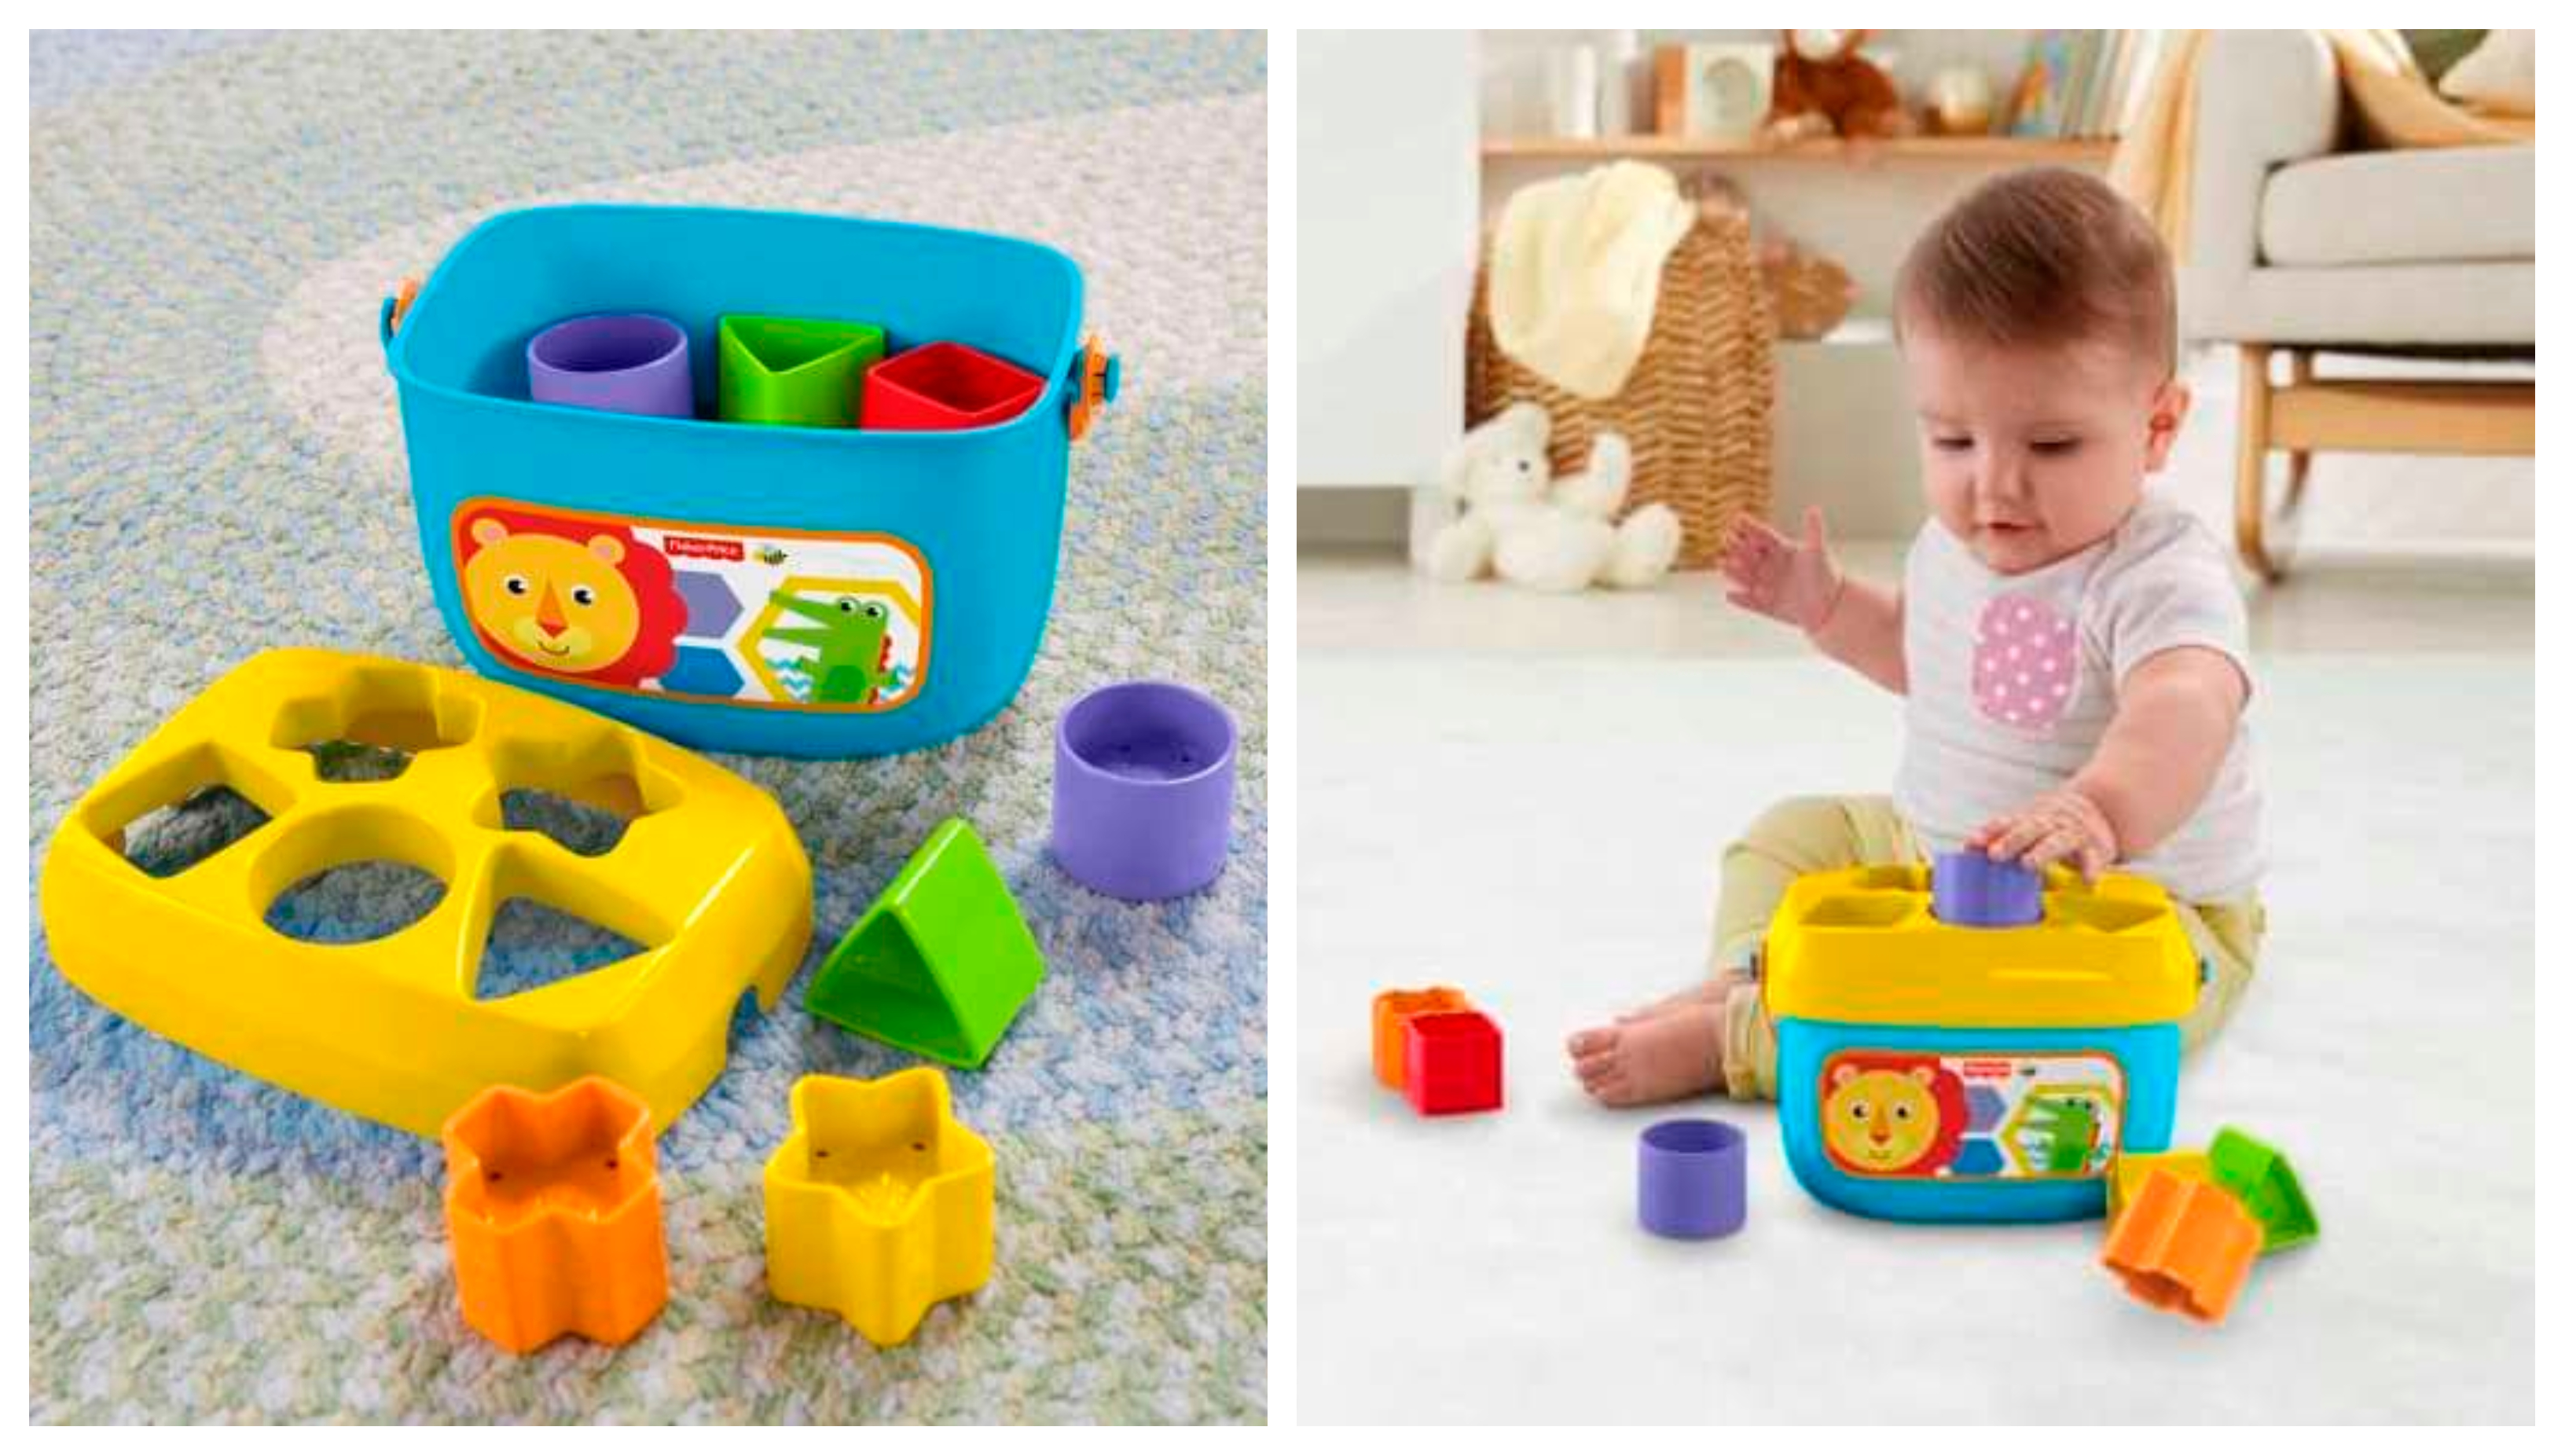 První vkládací puzzle Fisher-Price Baby's First Blocks jsou vhodné pro děti od 6 měsíců, které rozvíjí základní znalosti, smyslové vnímání, schopnost řešit úkoly i důvěru v sebe sama.